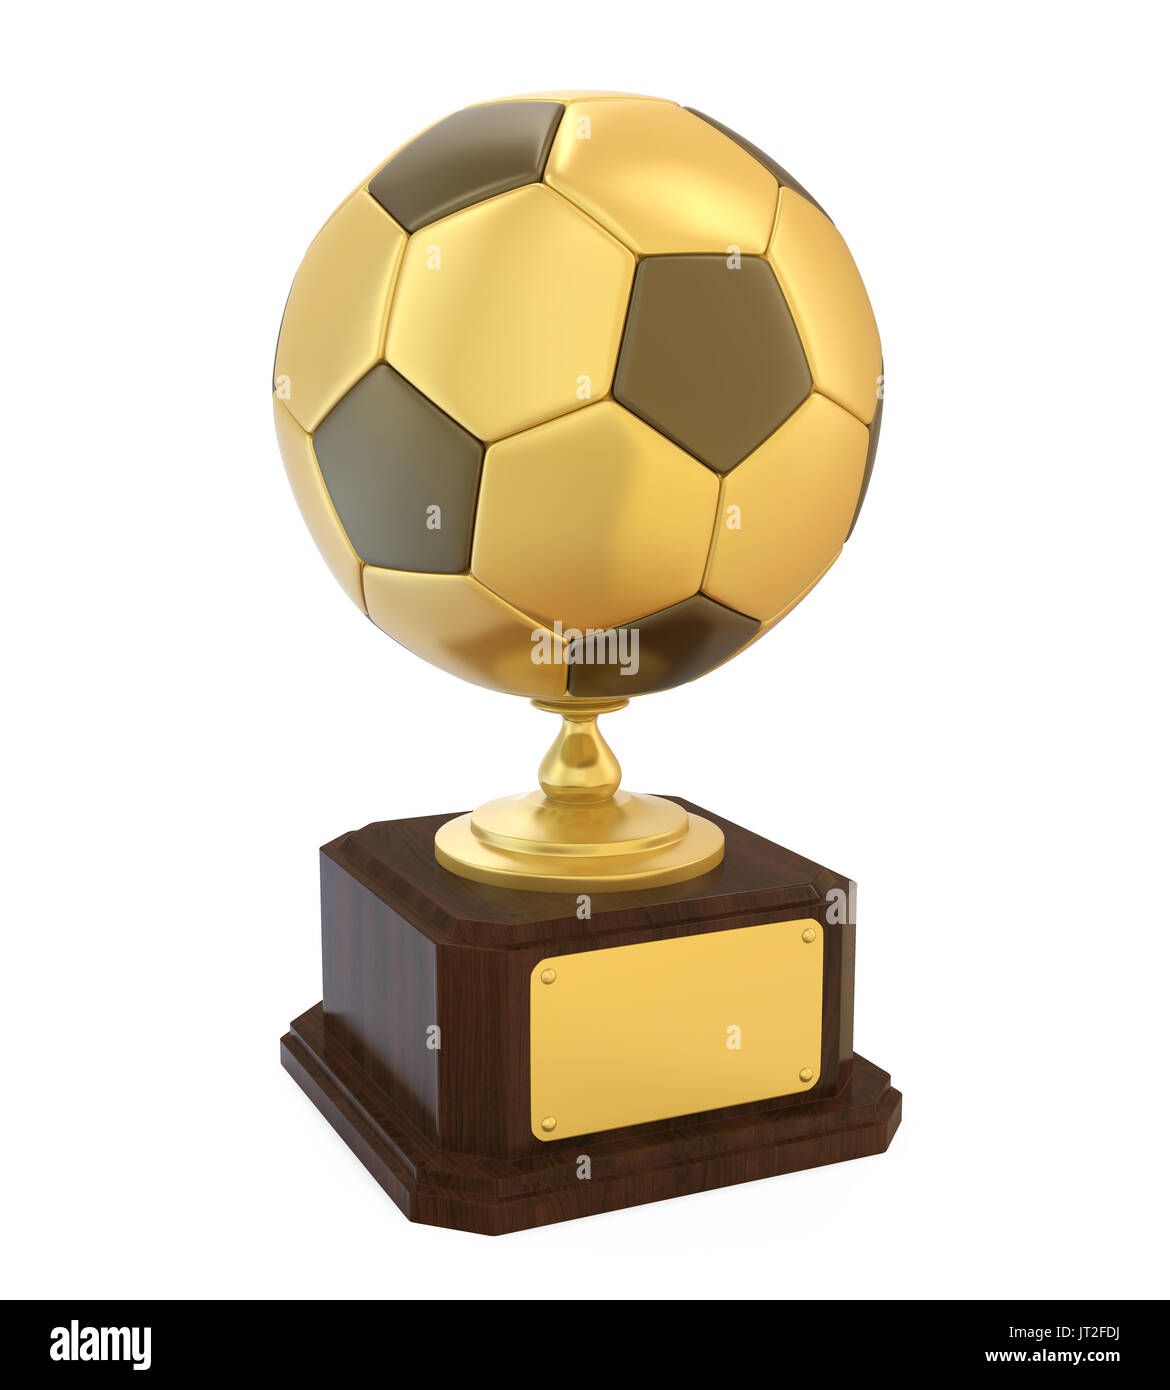 https://c8.alamy.com/compes/jt2fdj/trofeo-de-futbol-de-oro-aislado-jt2fdj.jpg